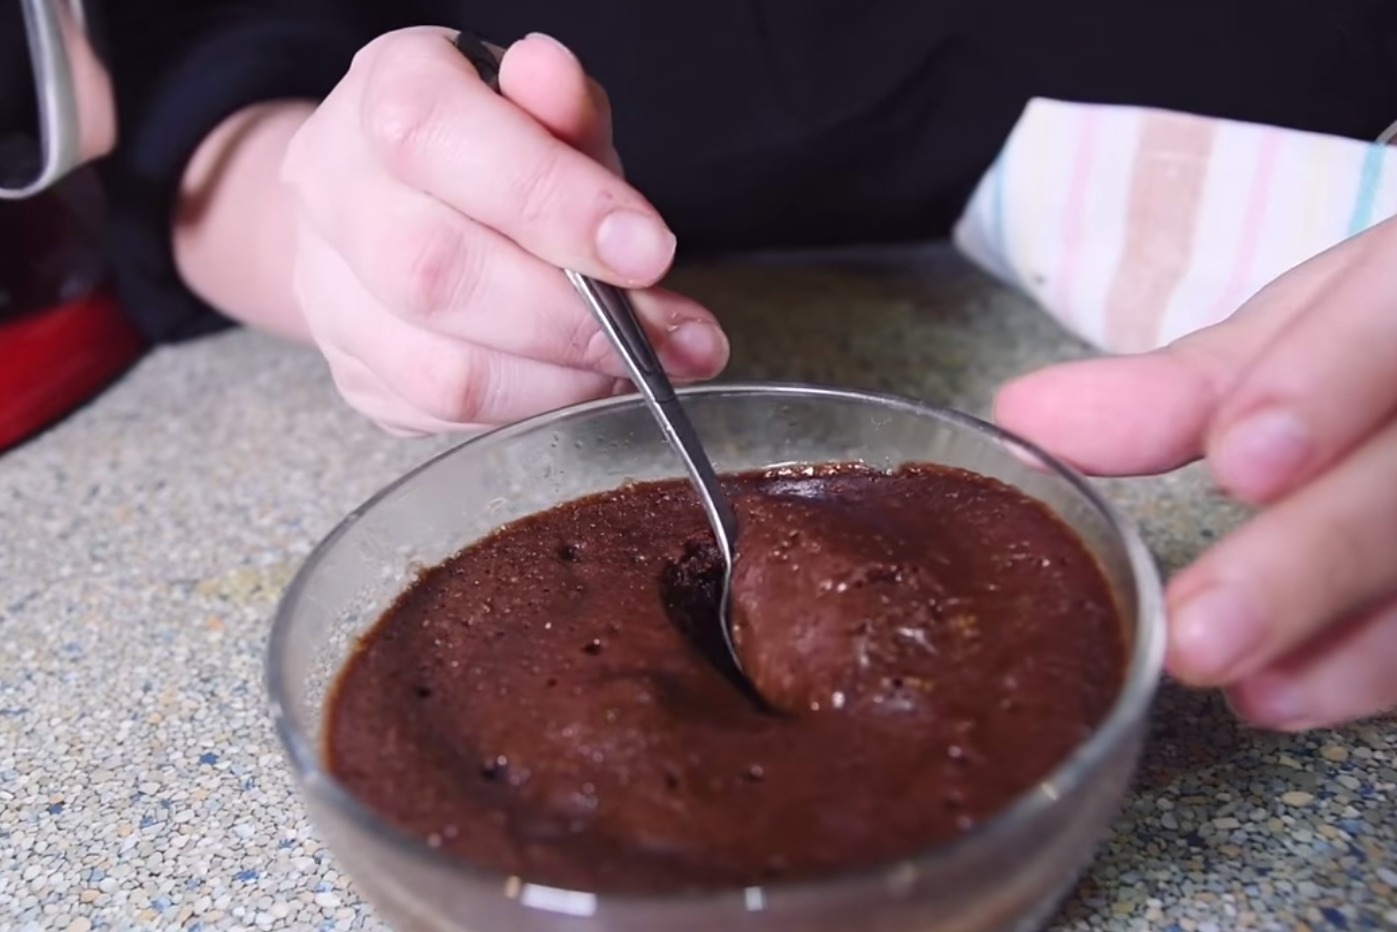 შოკოლადის ნამცხვარი 2 წუთში - ნუცას რეცეპტი